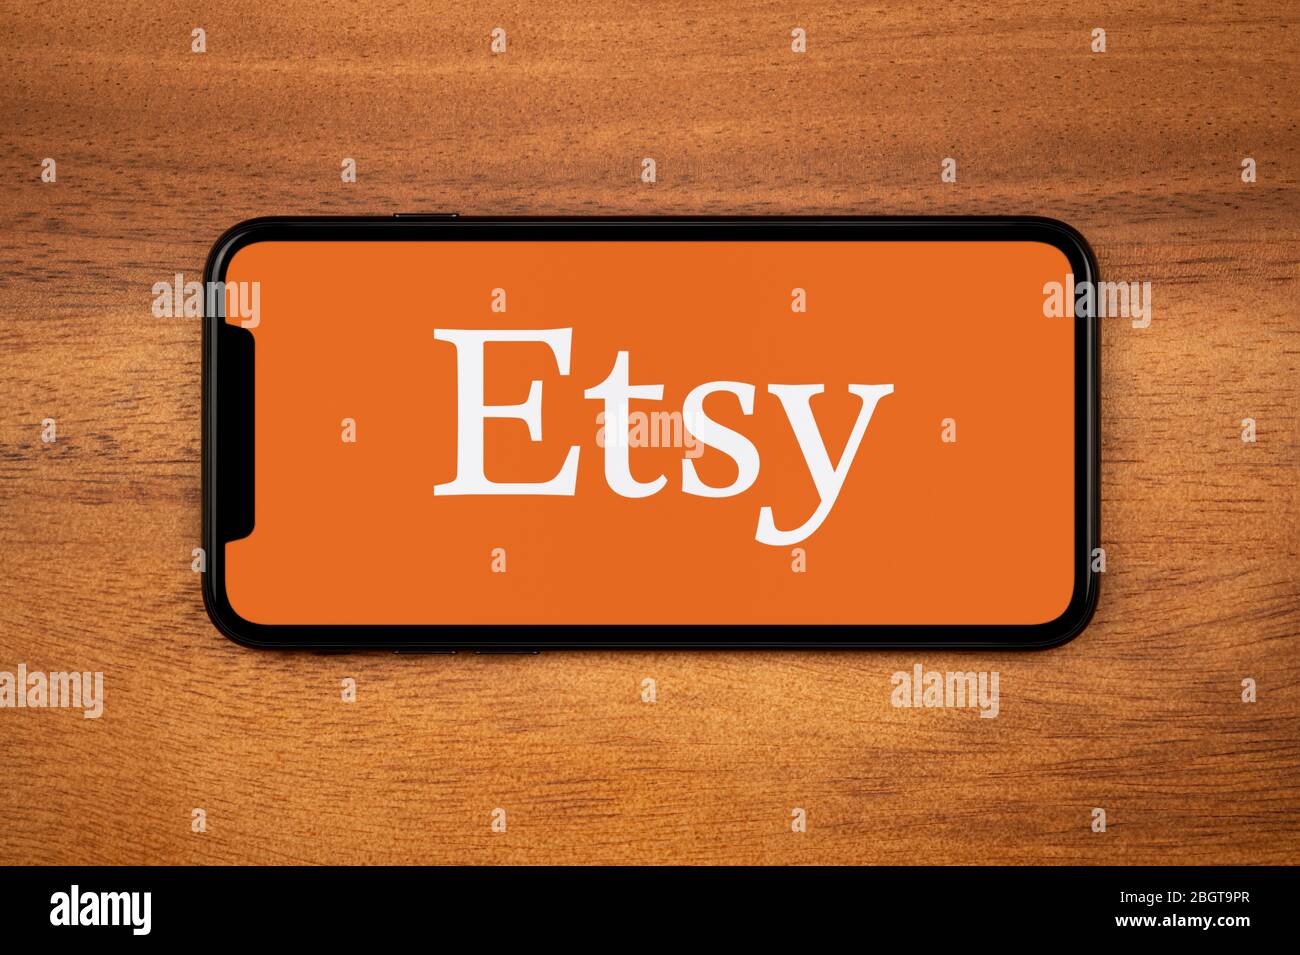 Un smartphone que muestra el logotipo de Etsy descansa sobre una mesa de madera plana (sólo para uso editorial). Foto de stock